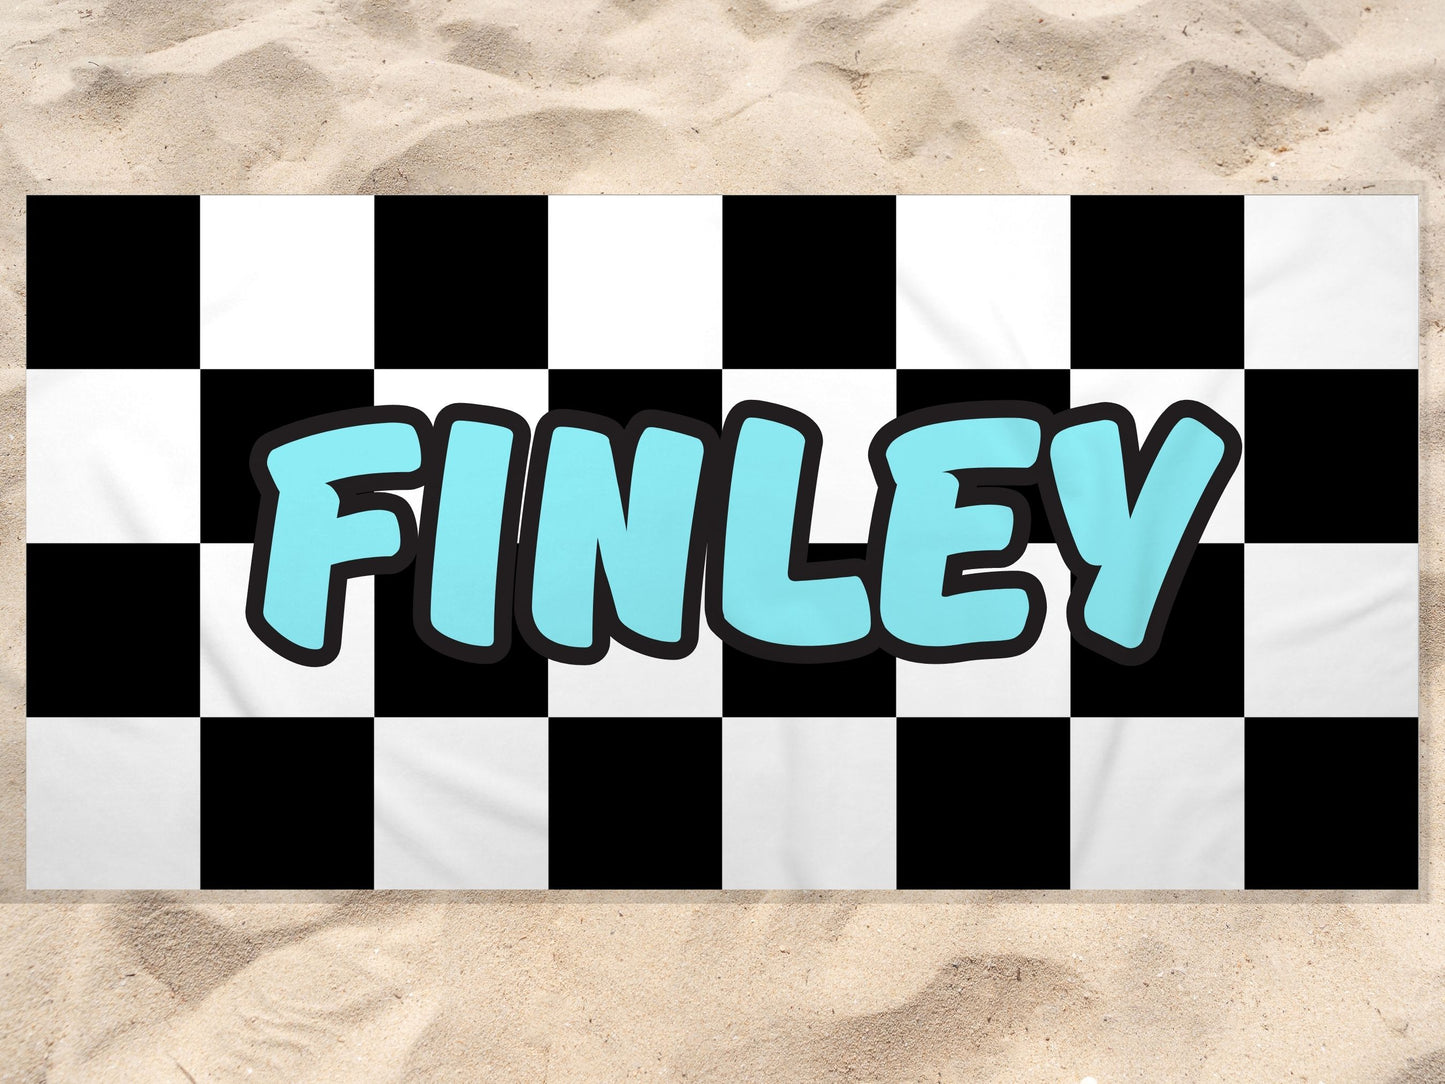 The Finley Beach Towel